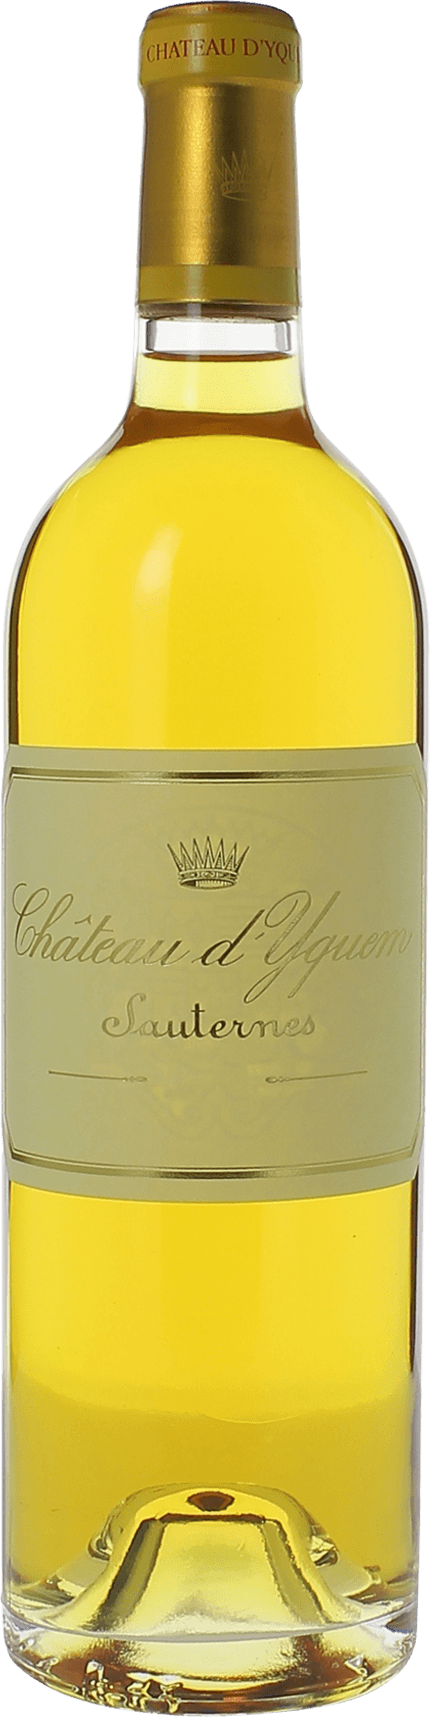 Yquem 1986 1er Grand cru class Sauternes, Bordeaux blanc